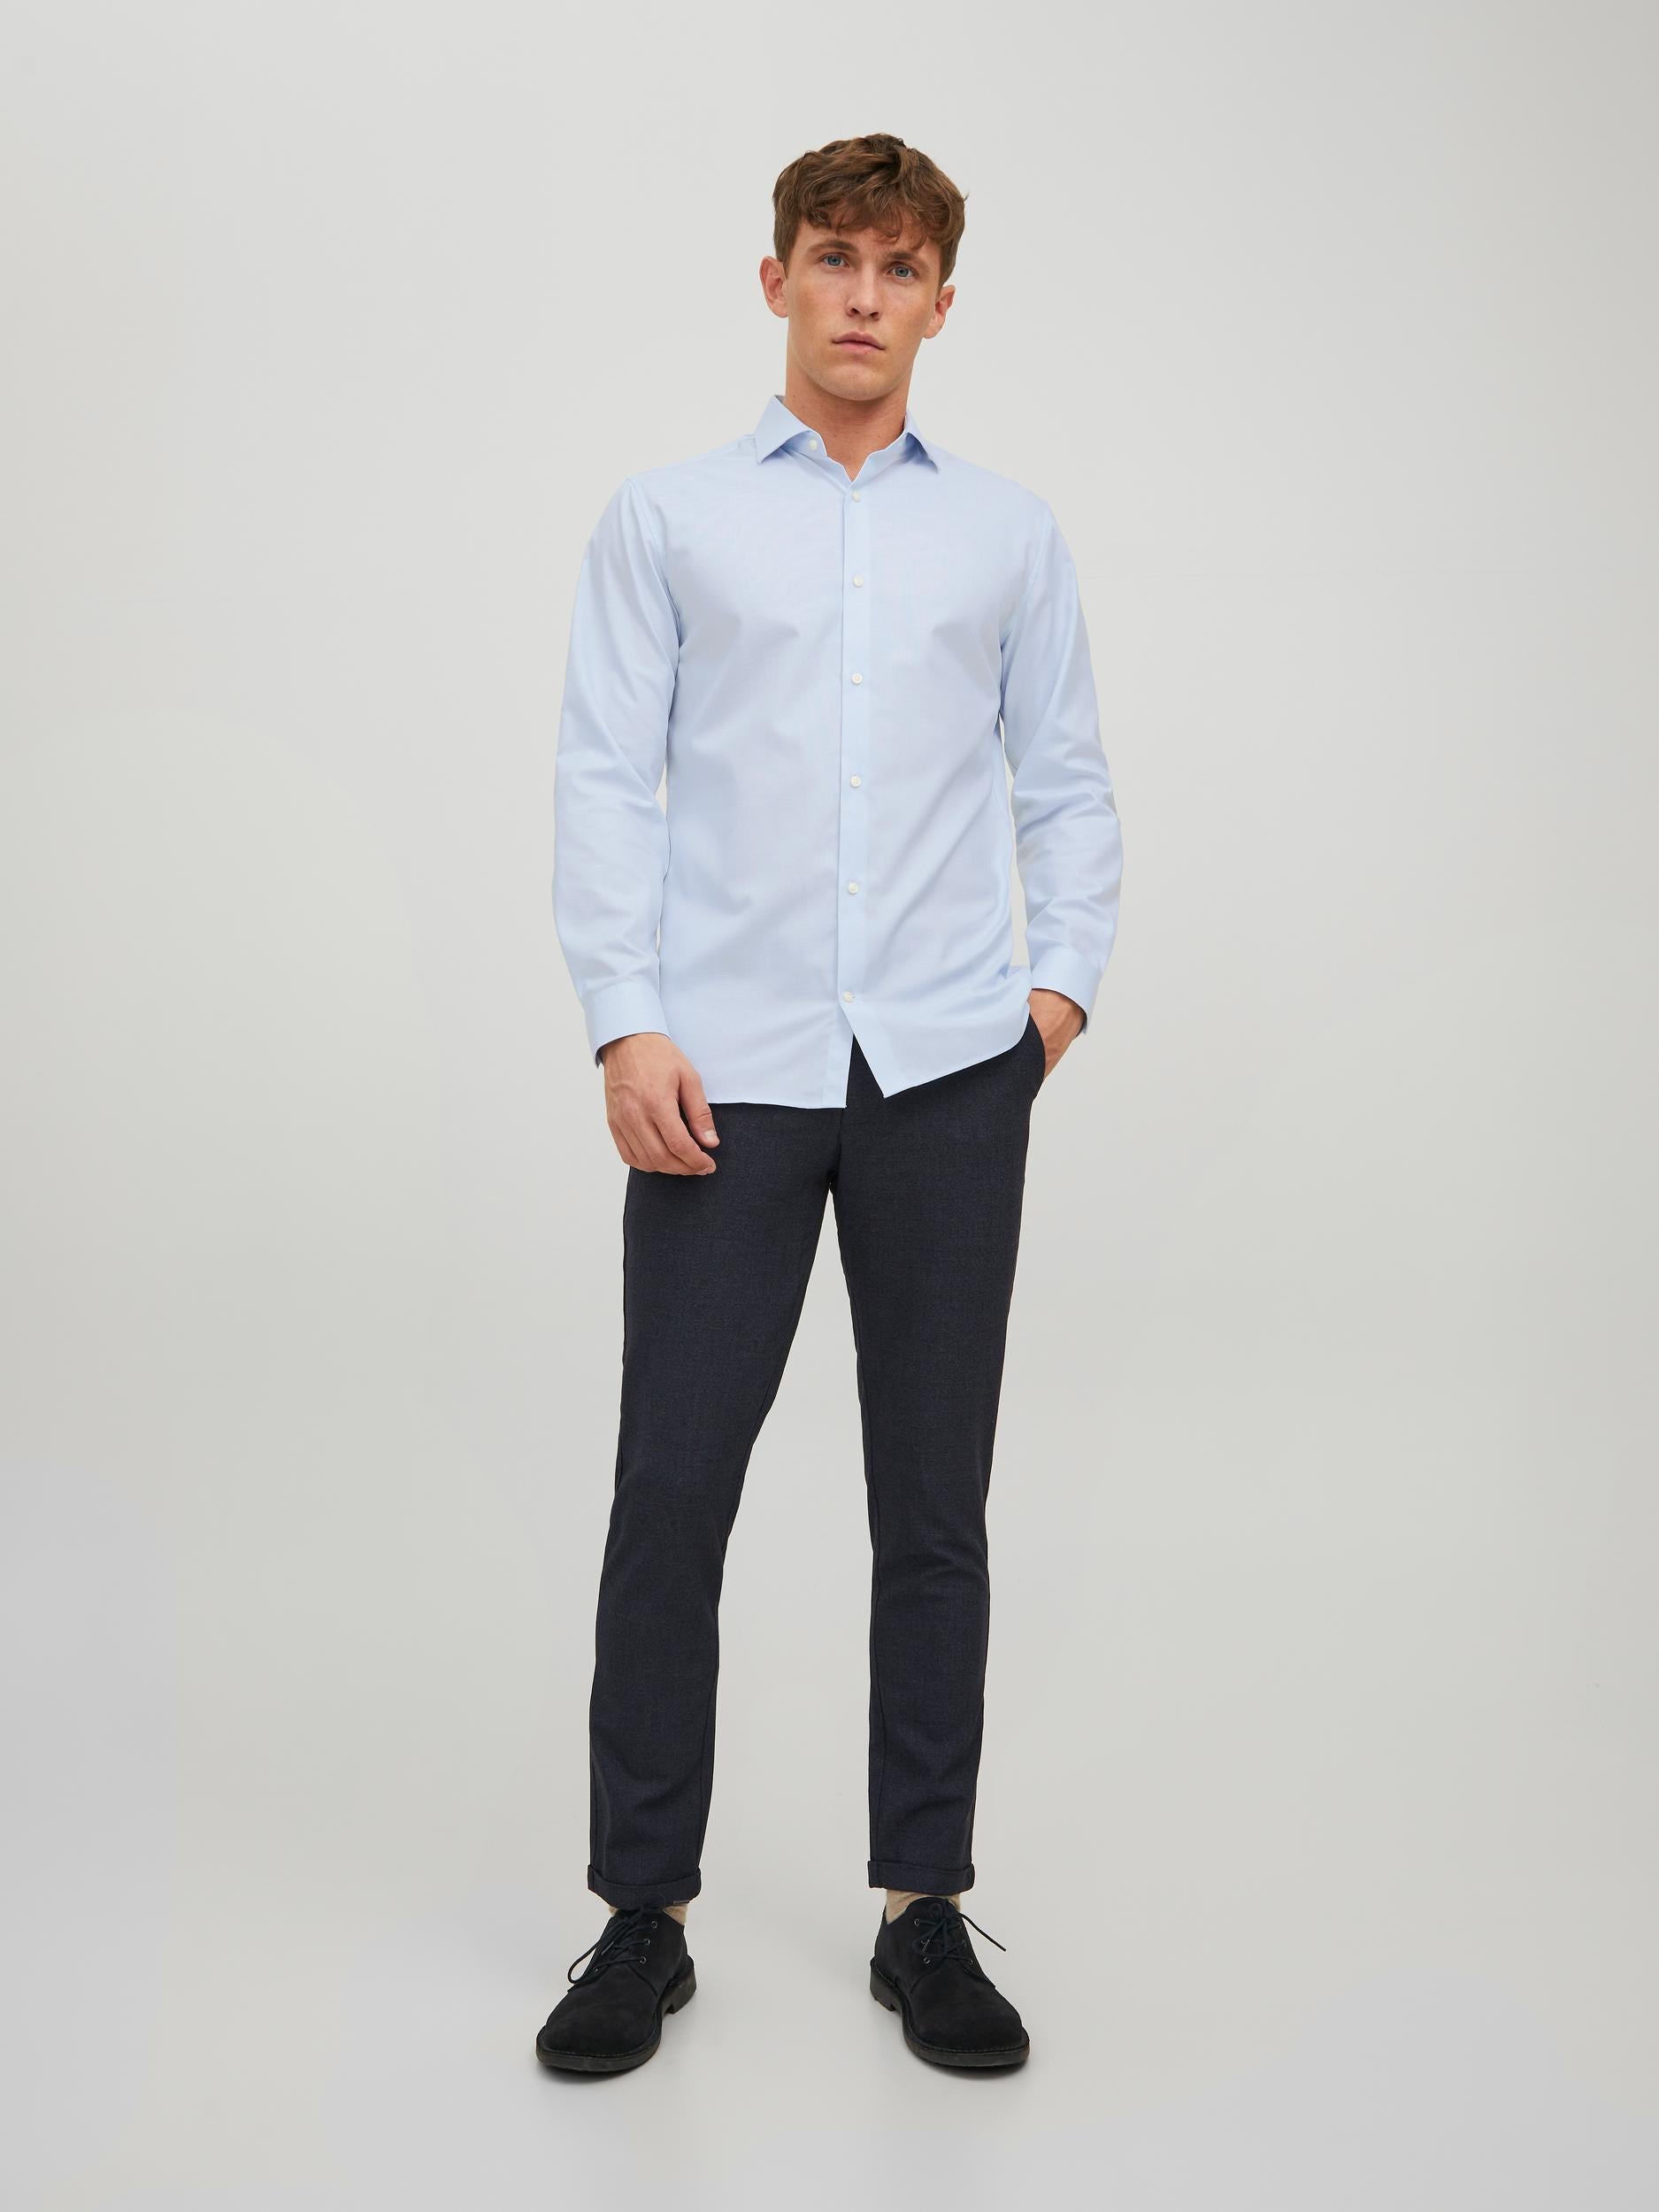 Men's Parker Cashmere Blue Shirt-Model Front View